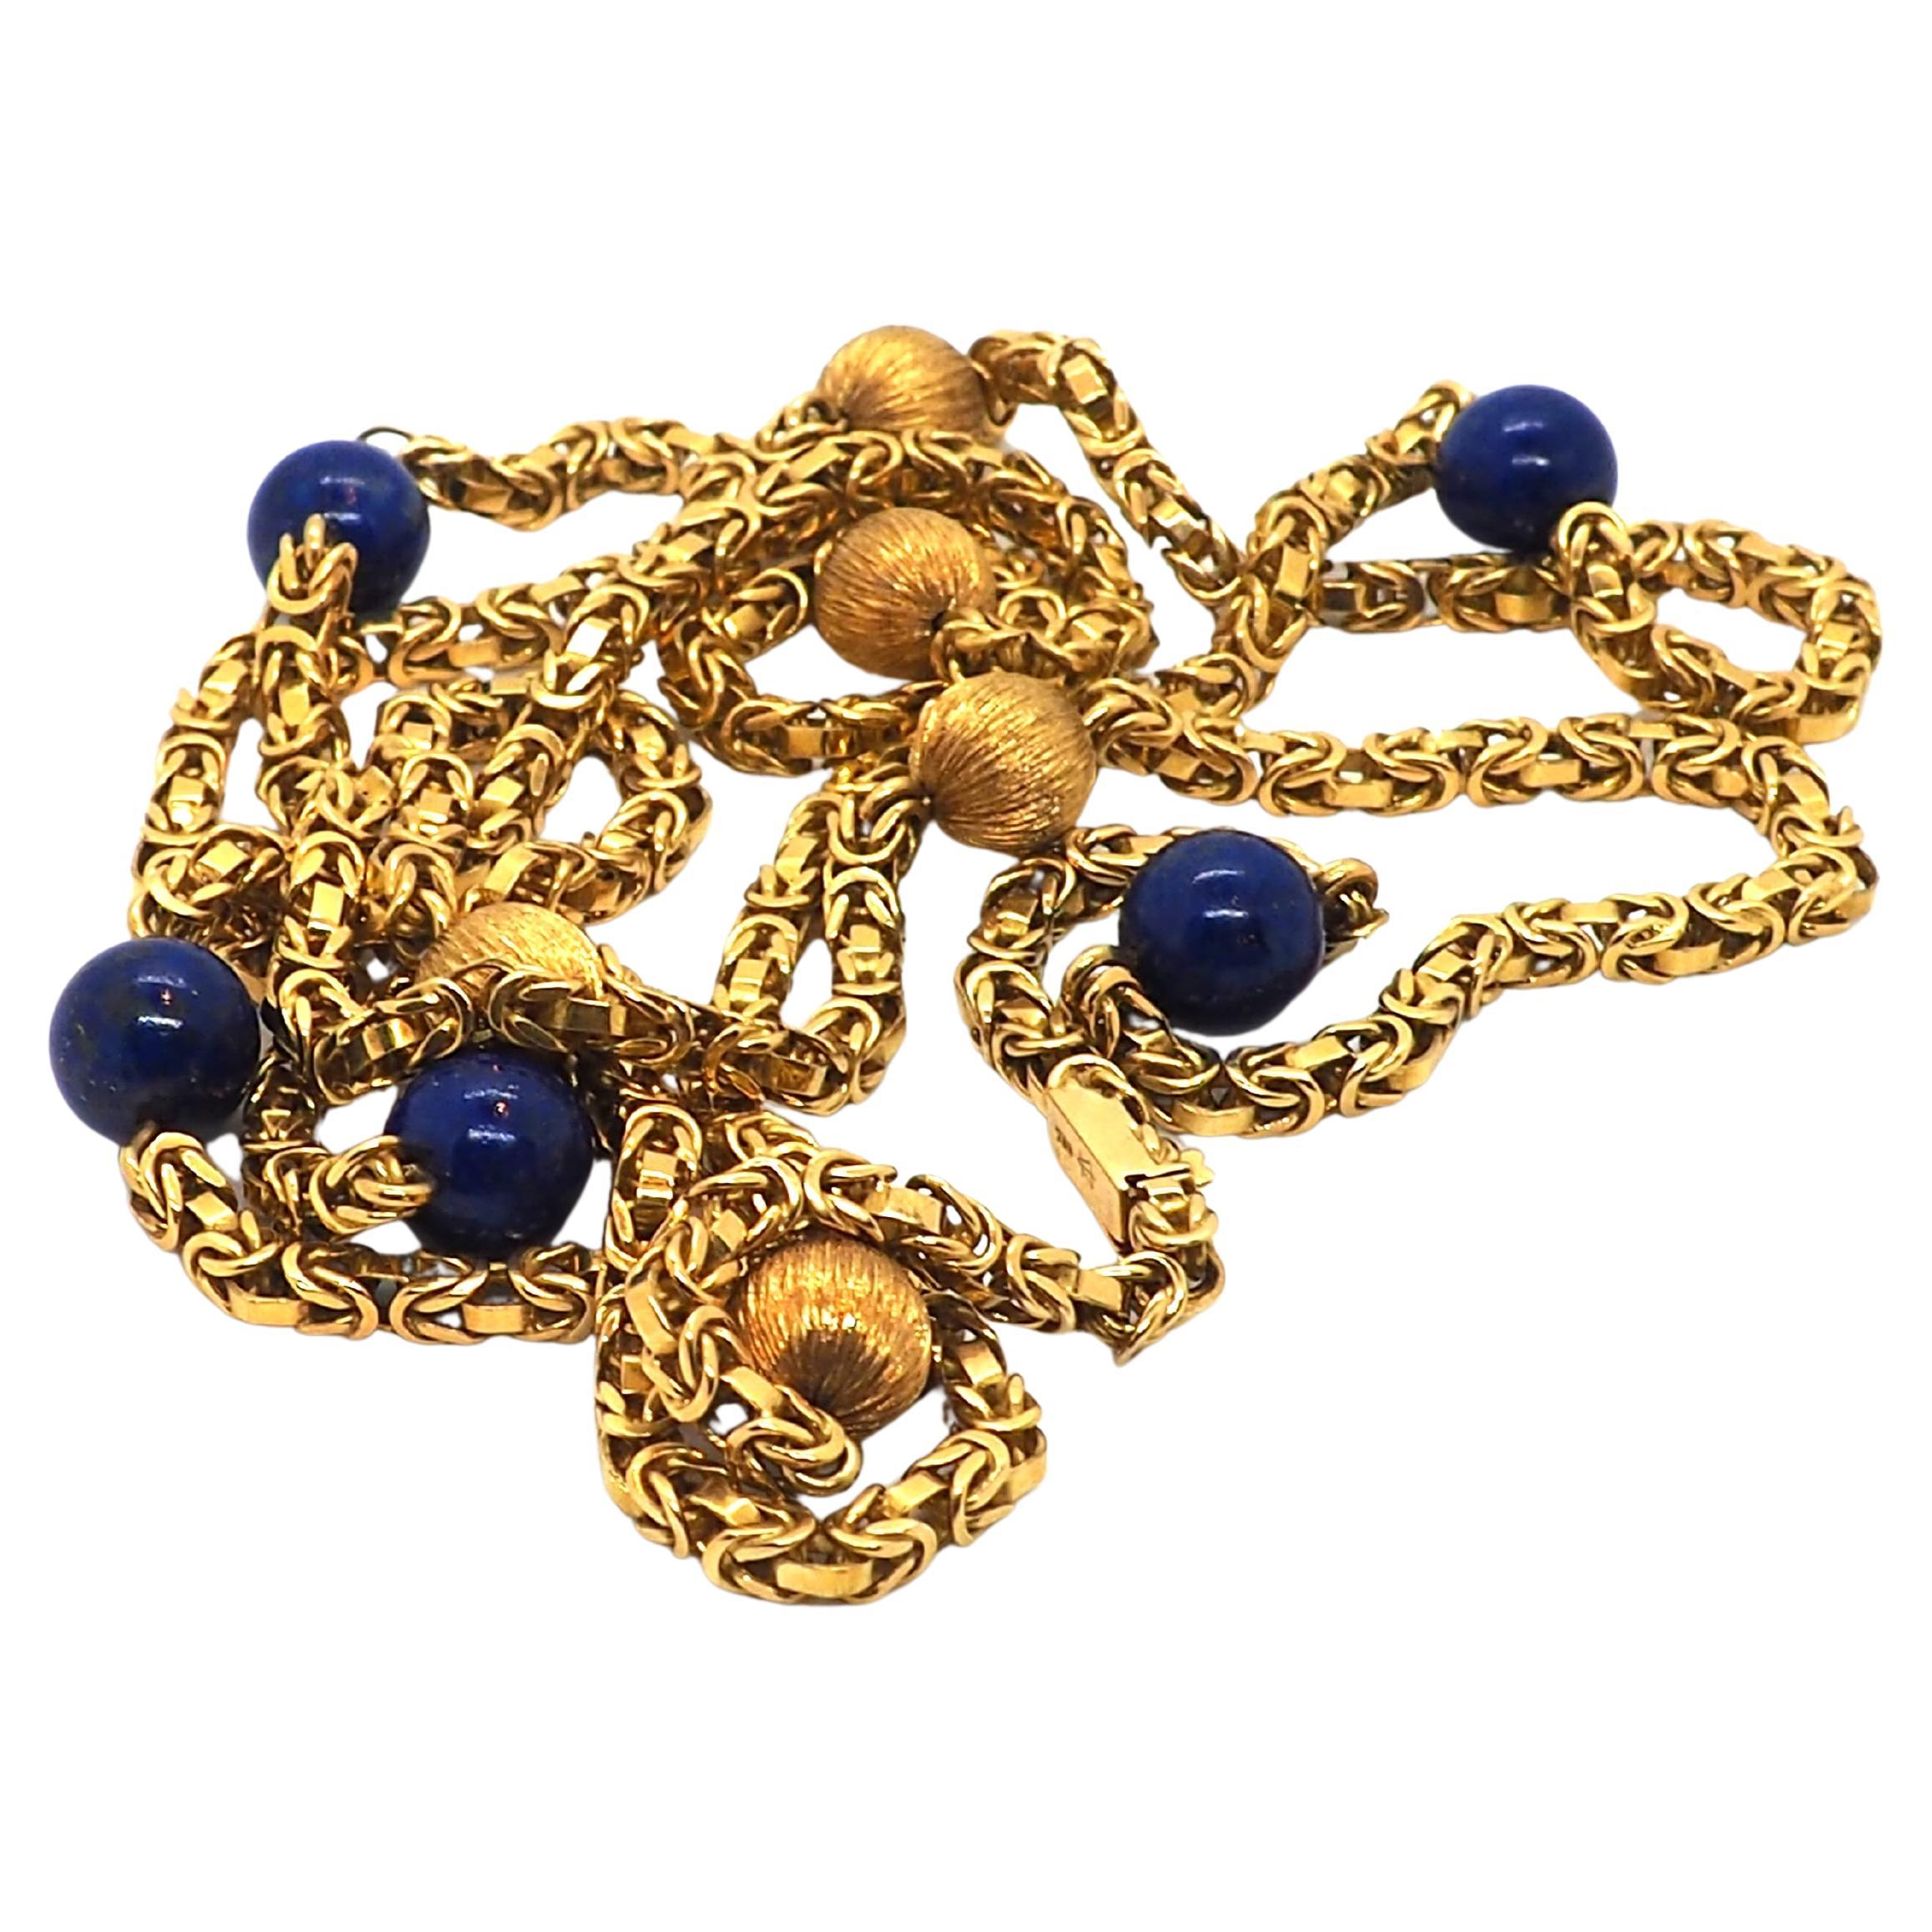 Vintage Art deco Halskette von 1950 aus Gelbgold, verziert mit 5 Lapislazuli-Kugeln und 5 weiteren Kugeln aus Gold mit 9,35mm an einer kastenförmigen Kette

Länge 102 cm 
Gesamtgewicht 80,2 g

Alle unsere Stücke wurden sorgfältig ausgewählt,